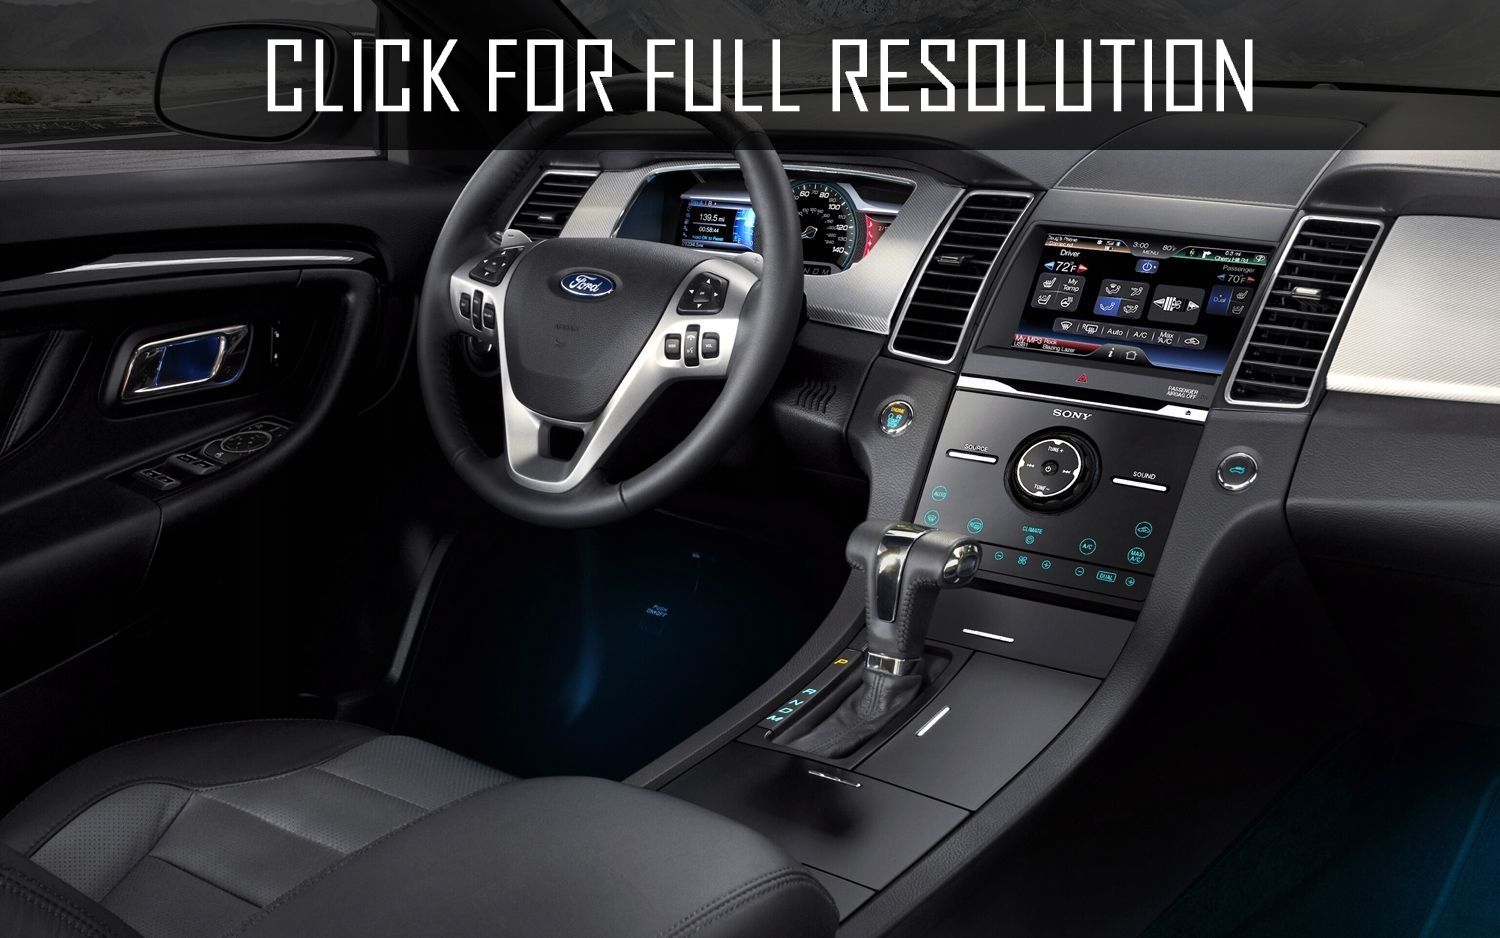 2015 Ford Explorer Xlt